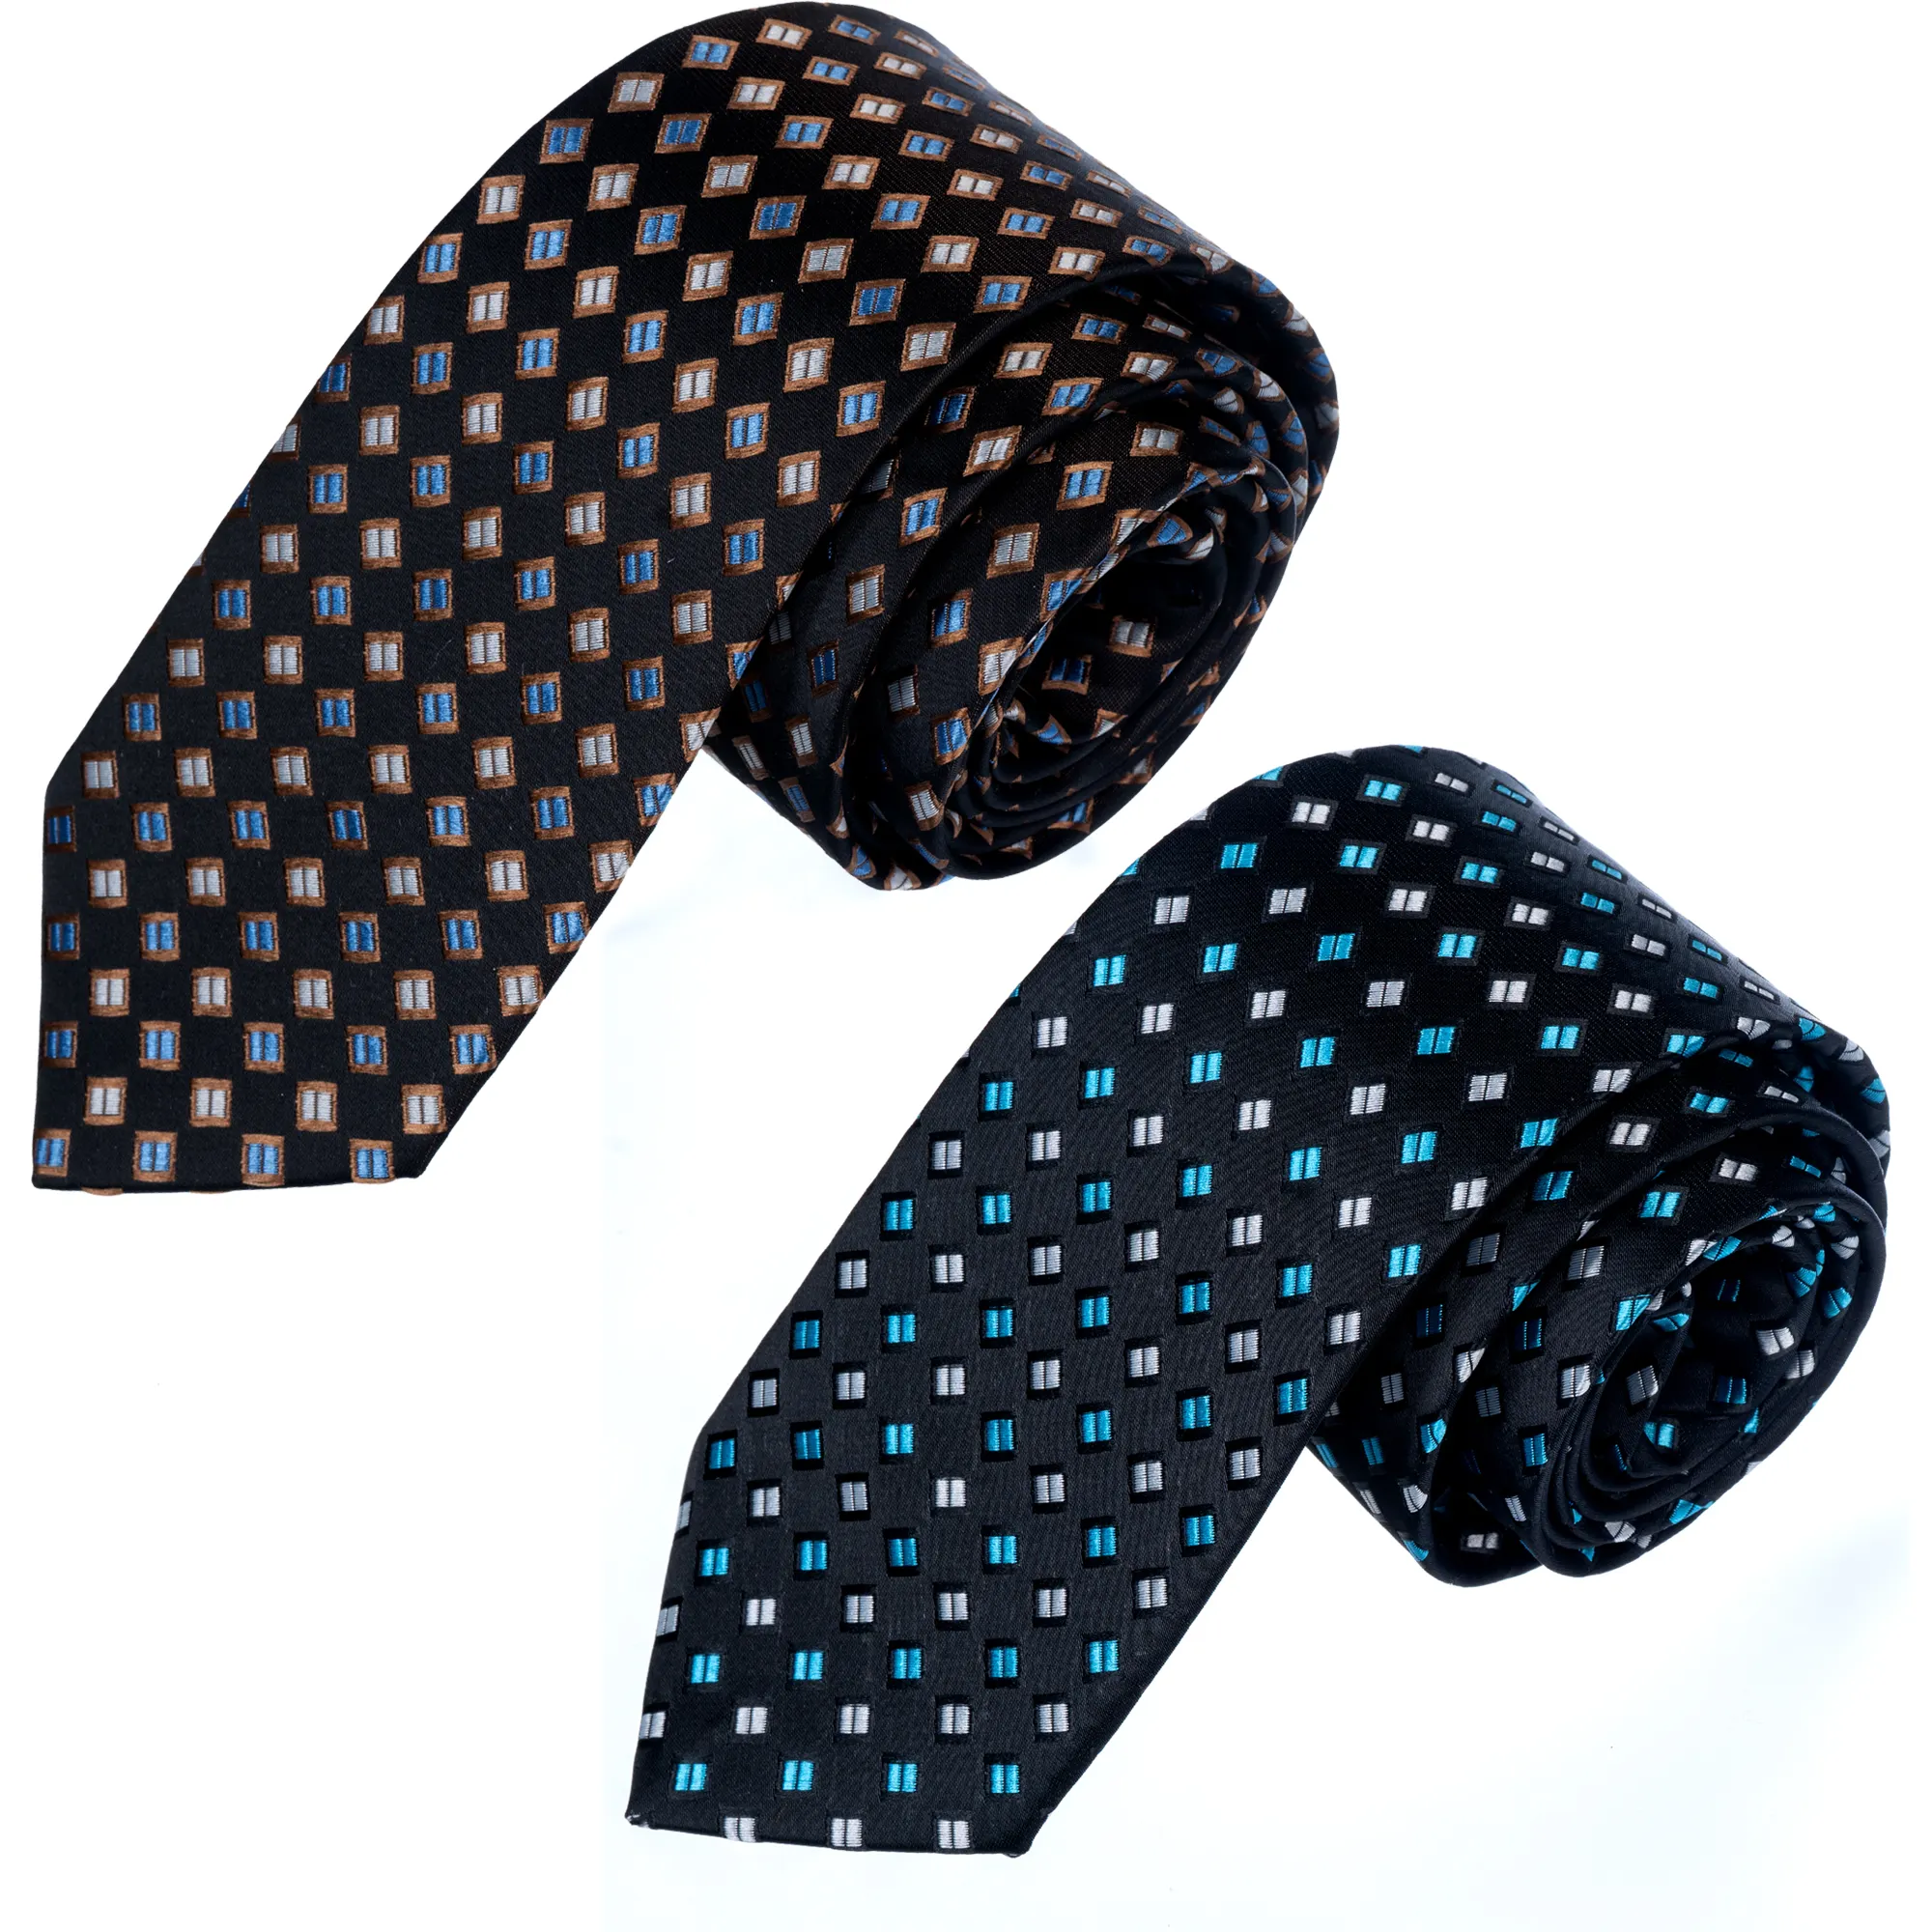 Corbata de lana Beige de punto azul, corbata, corbata, Corbata, Gravate, Krawatte, Cravatta, cadenas de suministro ágiles de corbata de moda